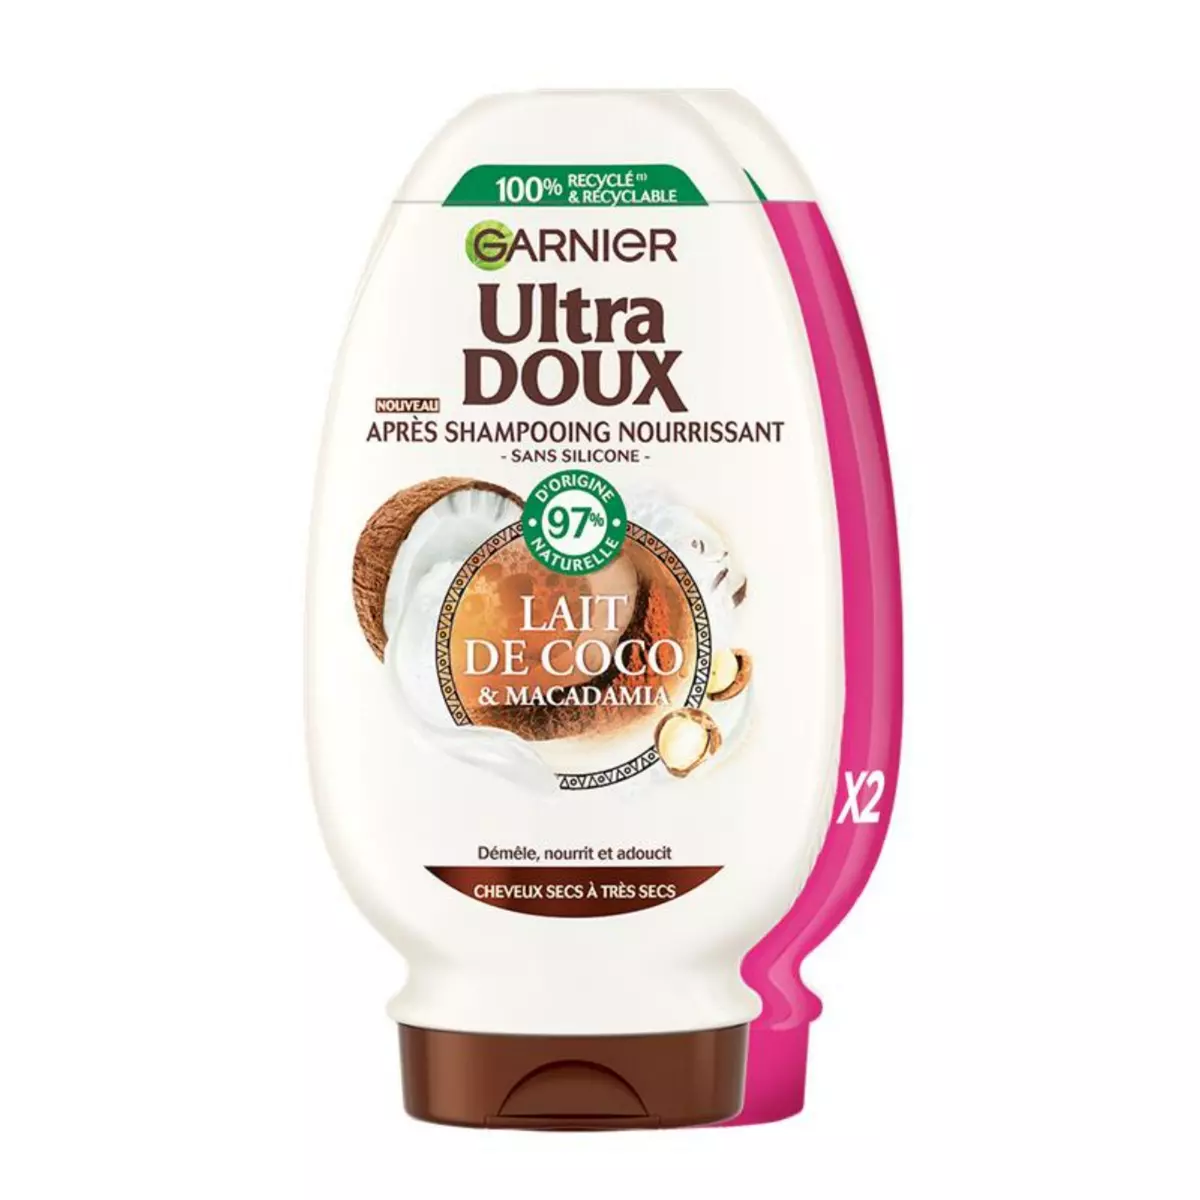 ULTRA DOUX Après-shampooing nourrissant lait de coco et macadamia cheveux secs à très secs 2x250ml